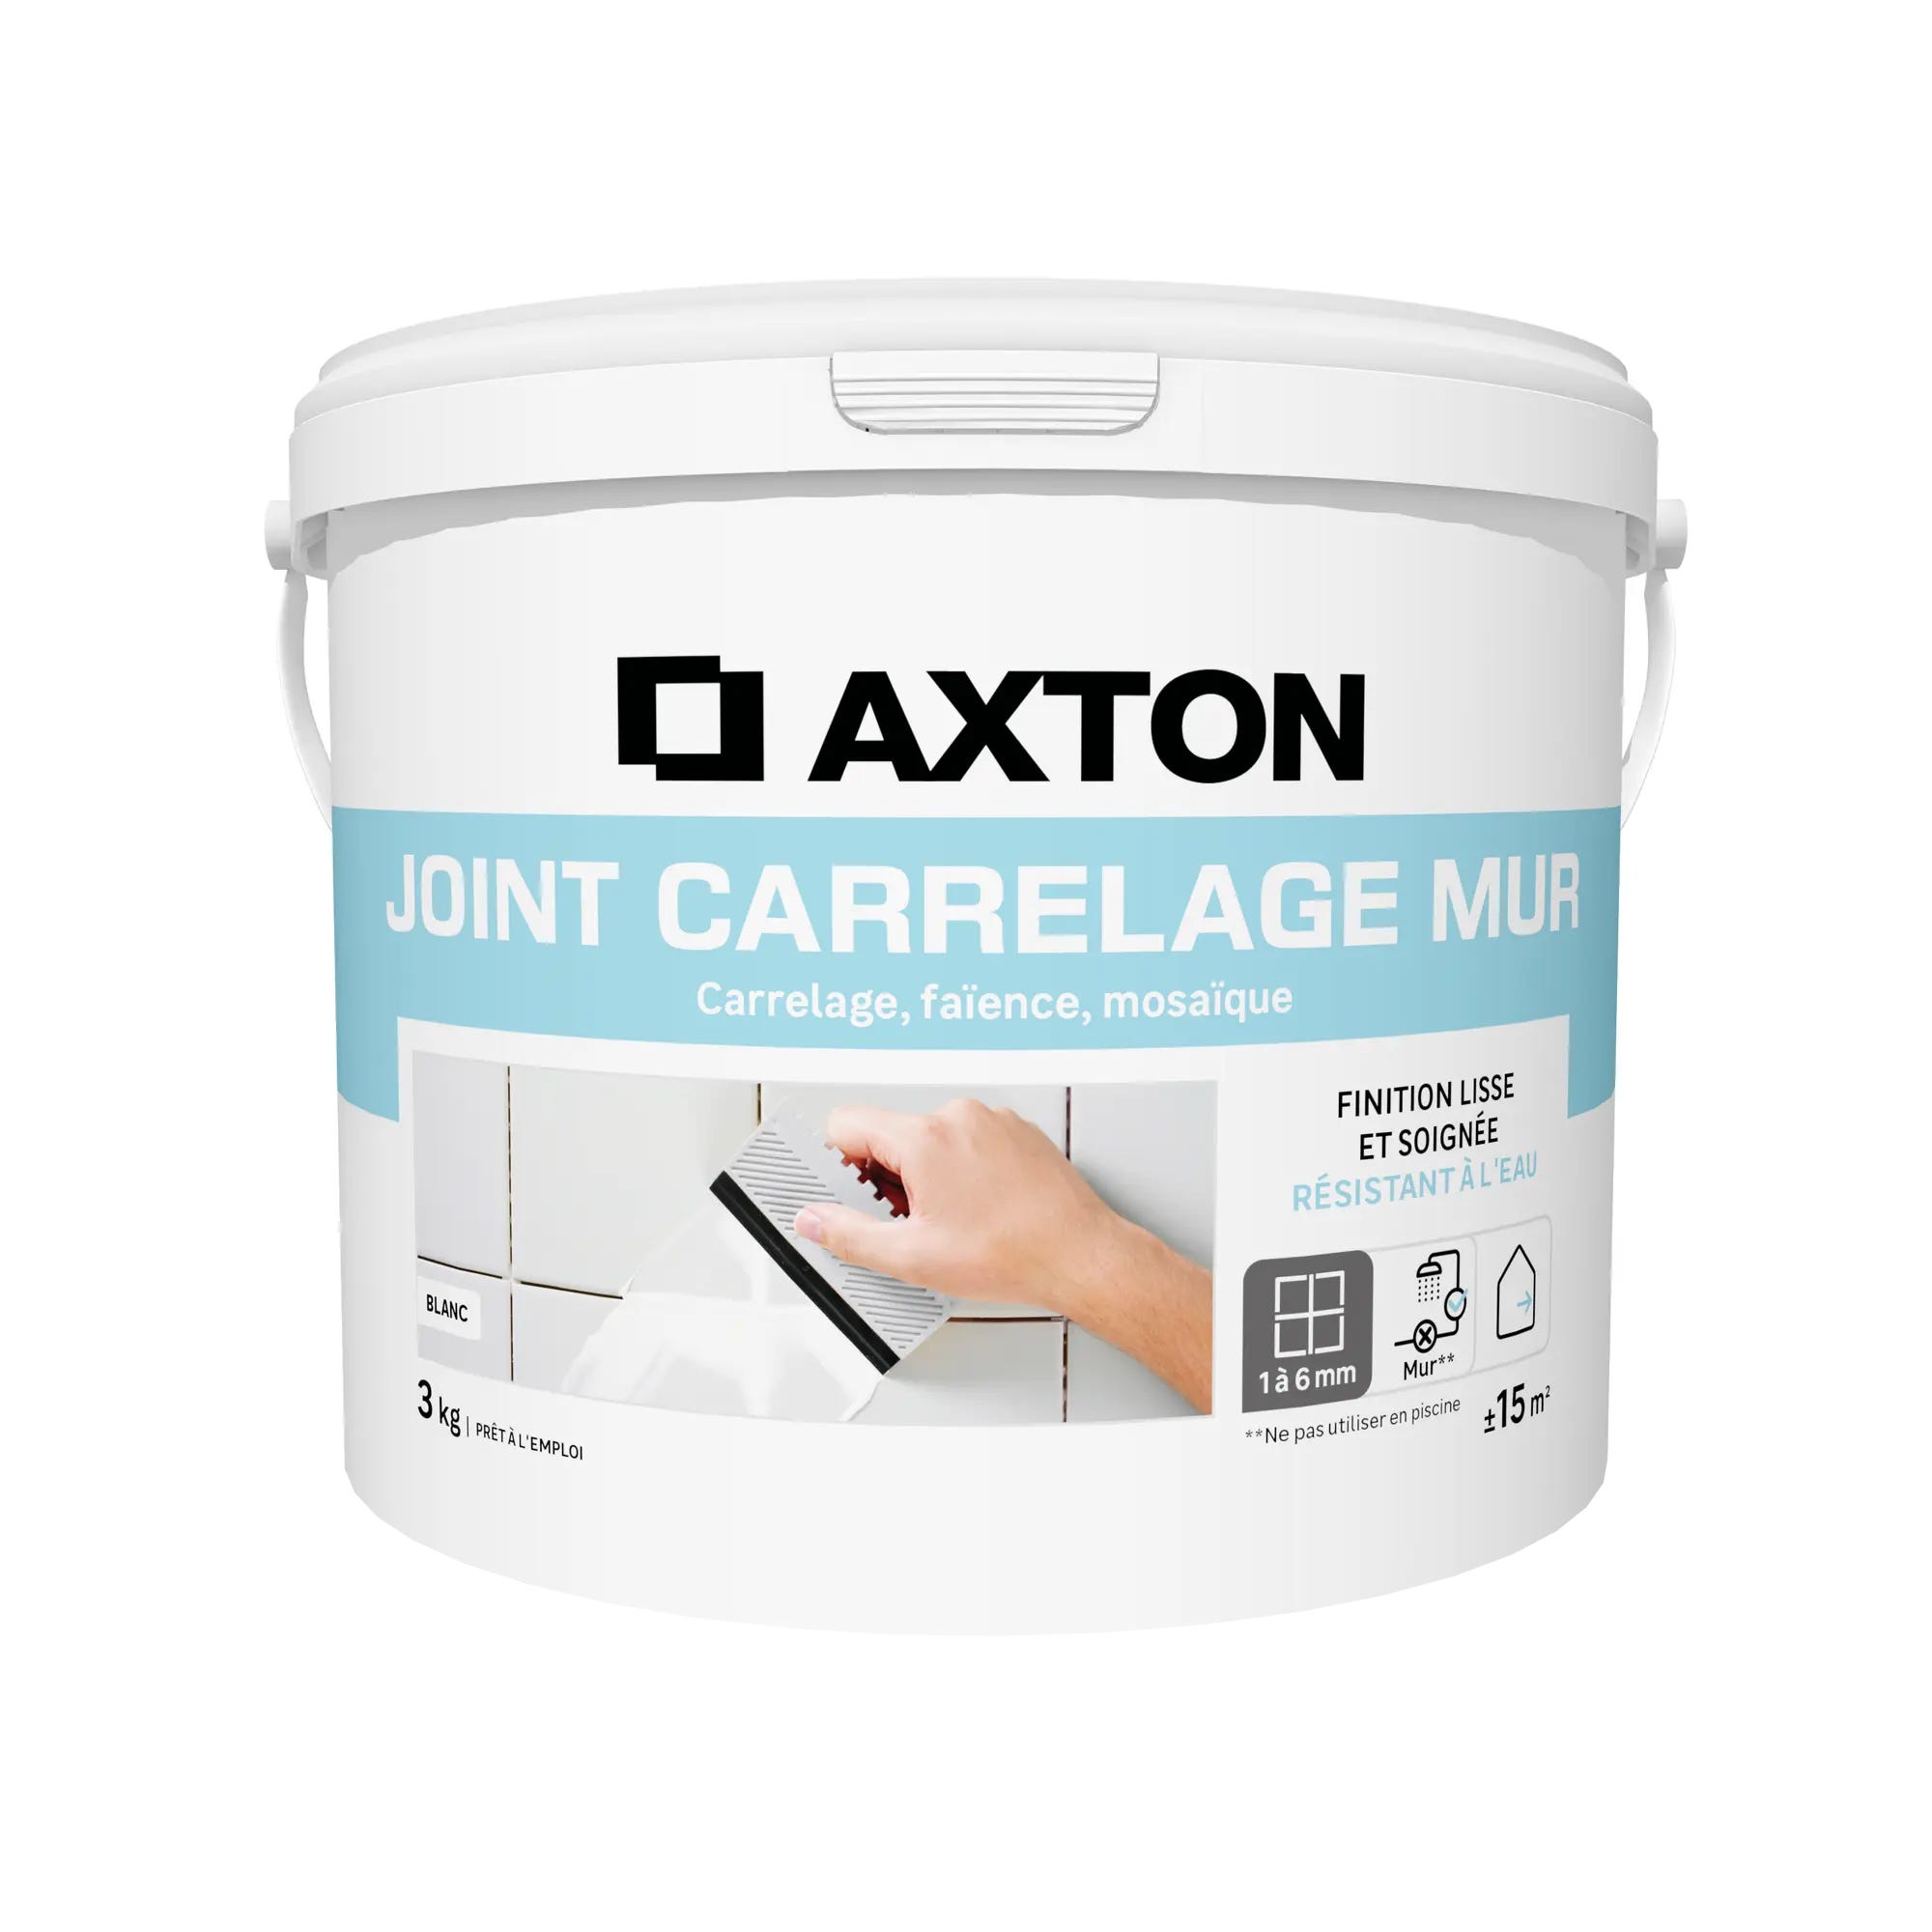 Joint pâte carrelage / mosaïque AXTON blanc 1.5KG